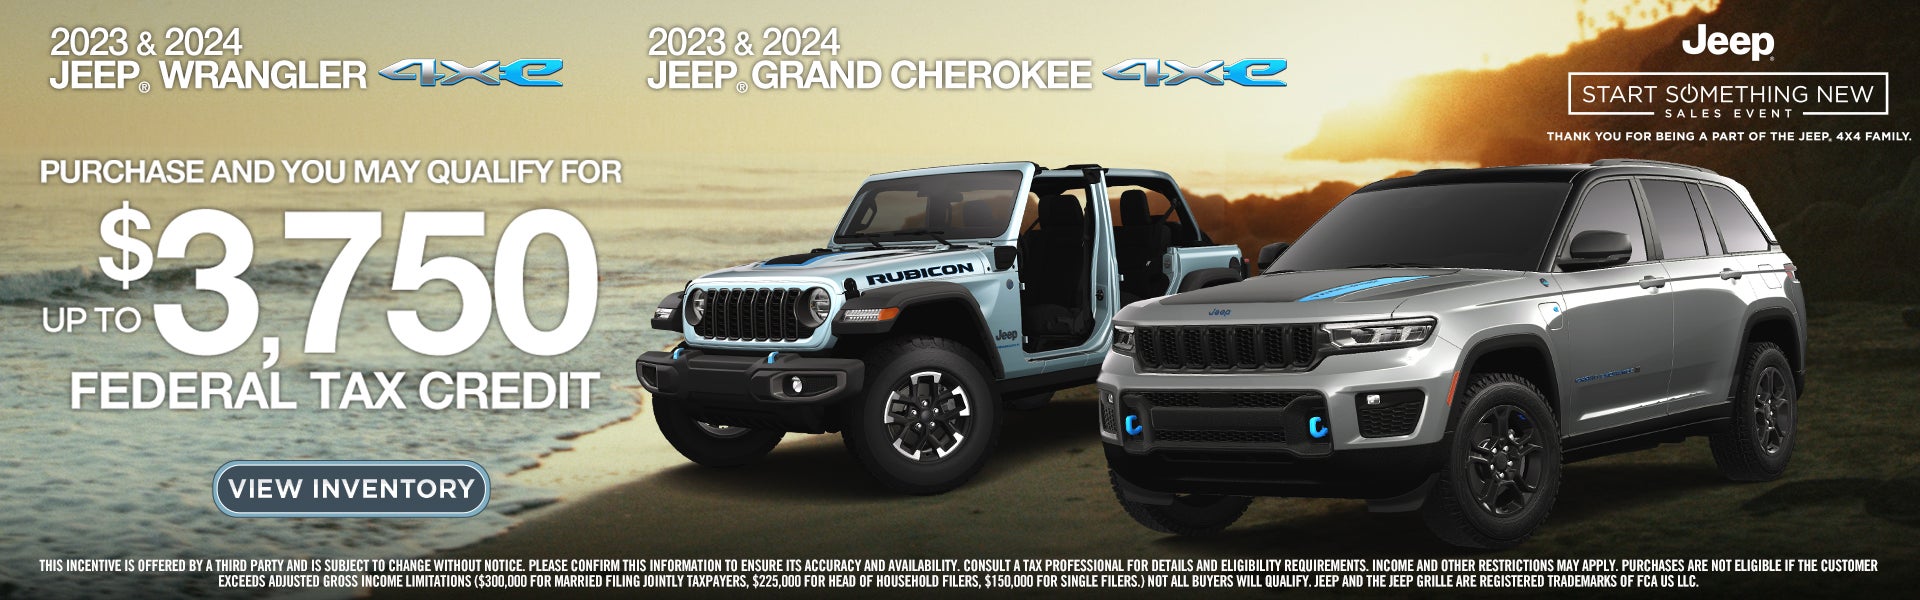 2023 and 2024 Jeep Wrangler and Grand Cherokee